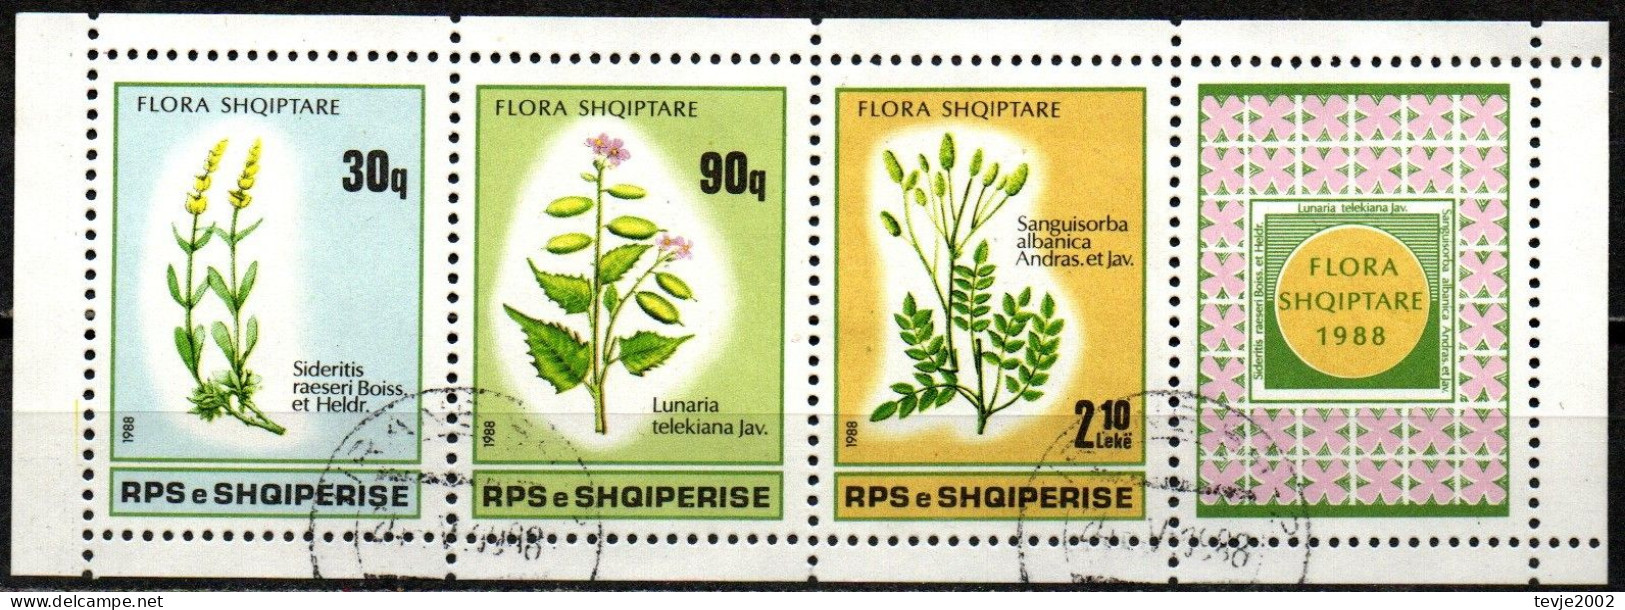 Albanien 1988 - Mi.Nr. 2358 - 2360 - Gestempelt Used - Blumen Flowers - Albanie